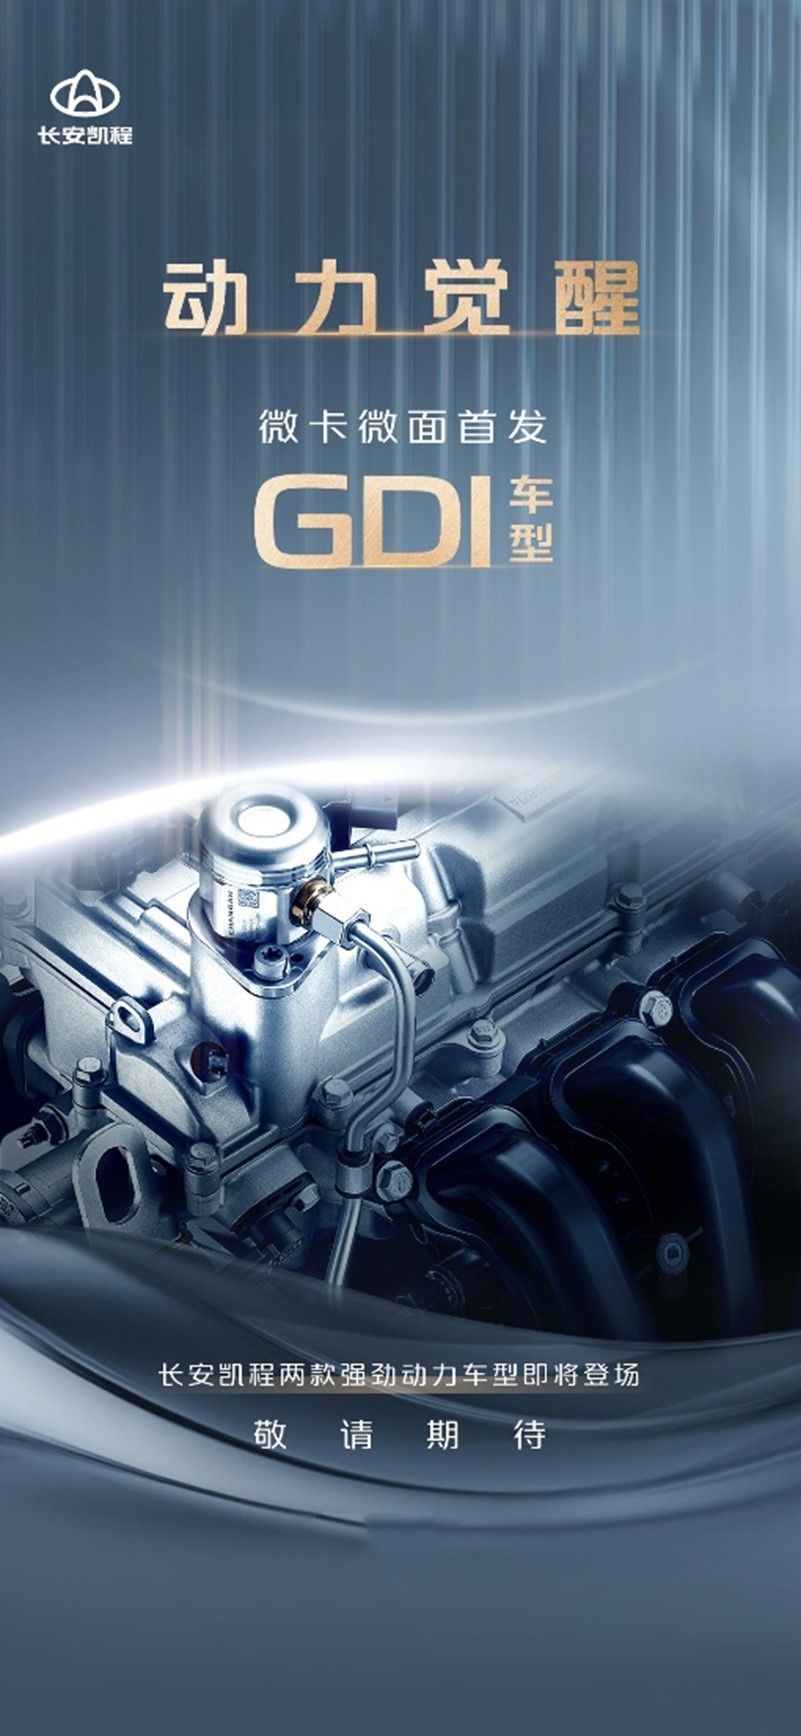 商用行业首搭GDI发动机 长安凯程打造动力新标准